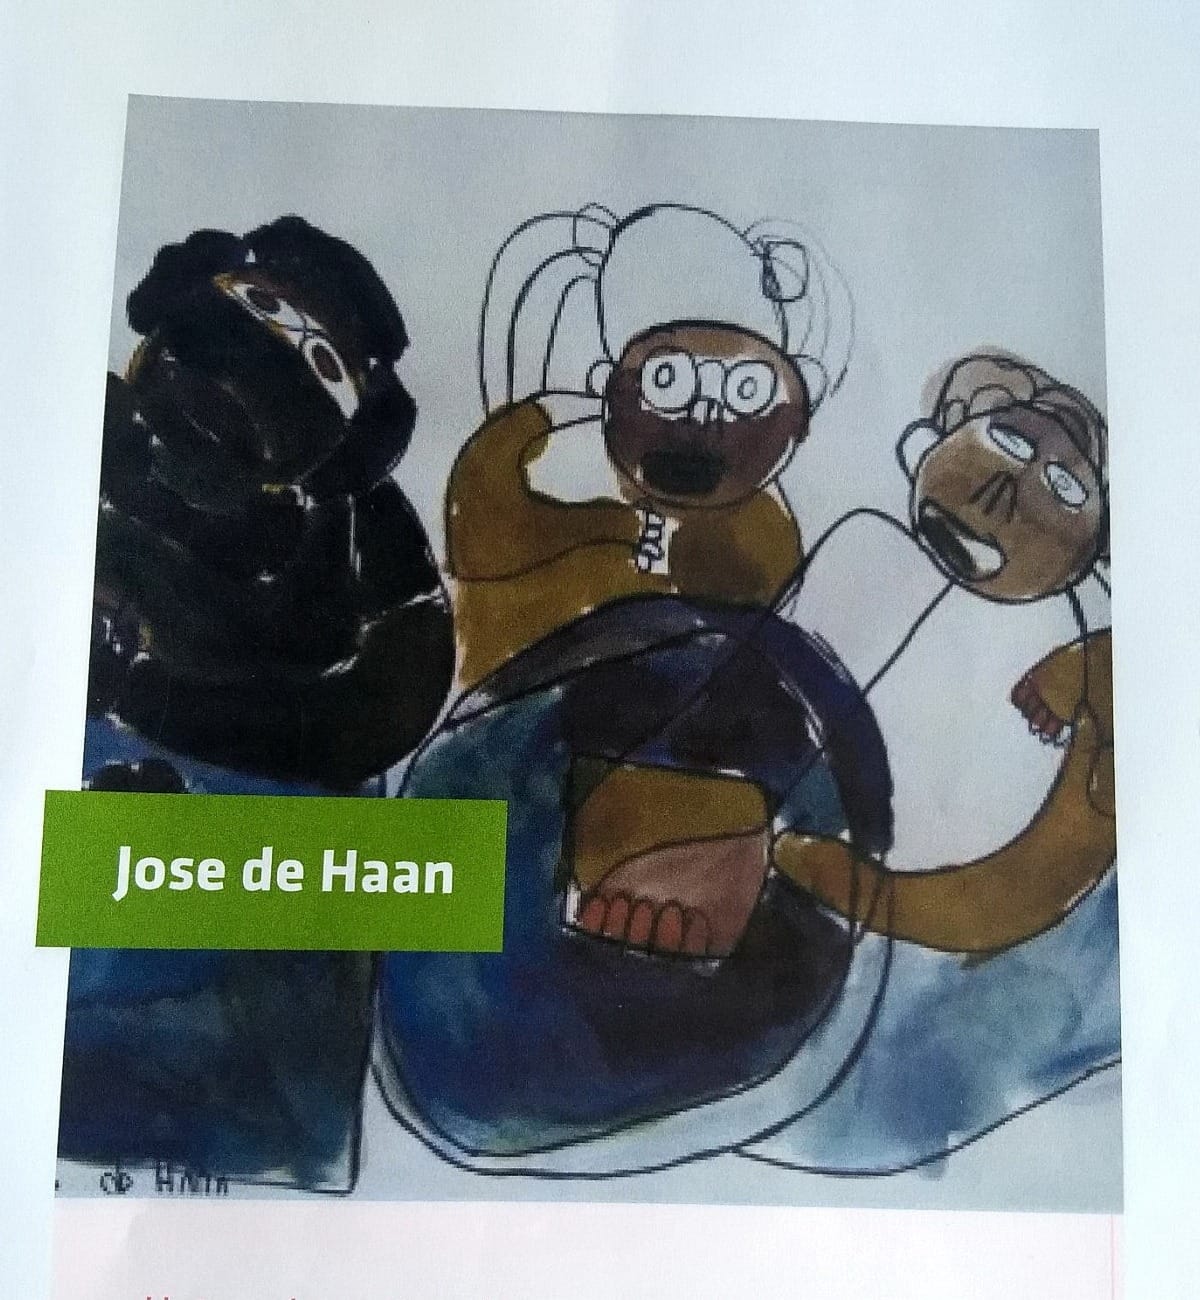 Jose de Haan